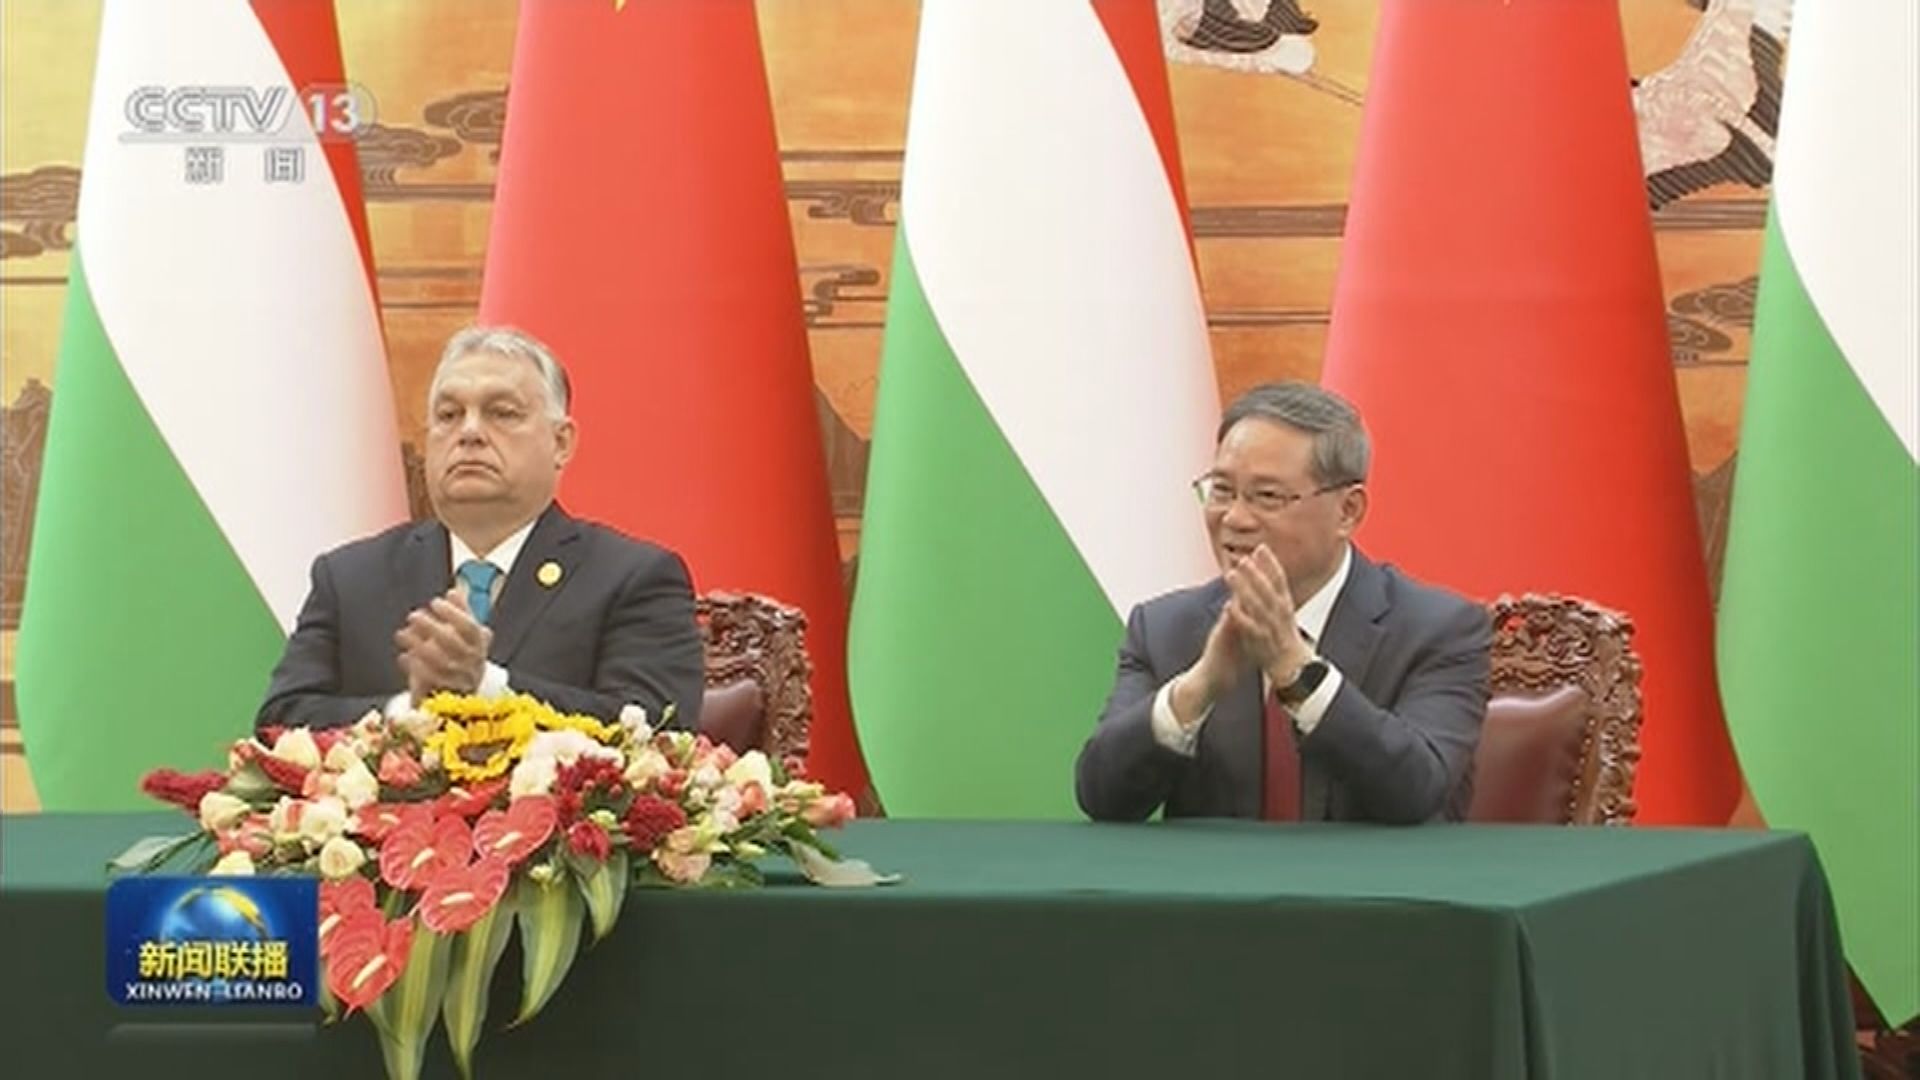 李強晤匈牙利總理歐爾班 稱中國發展對歐洲是機遇